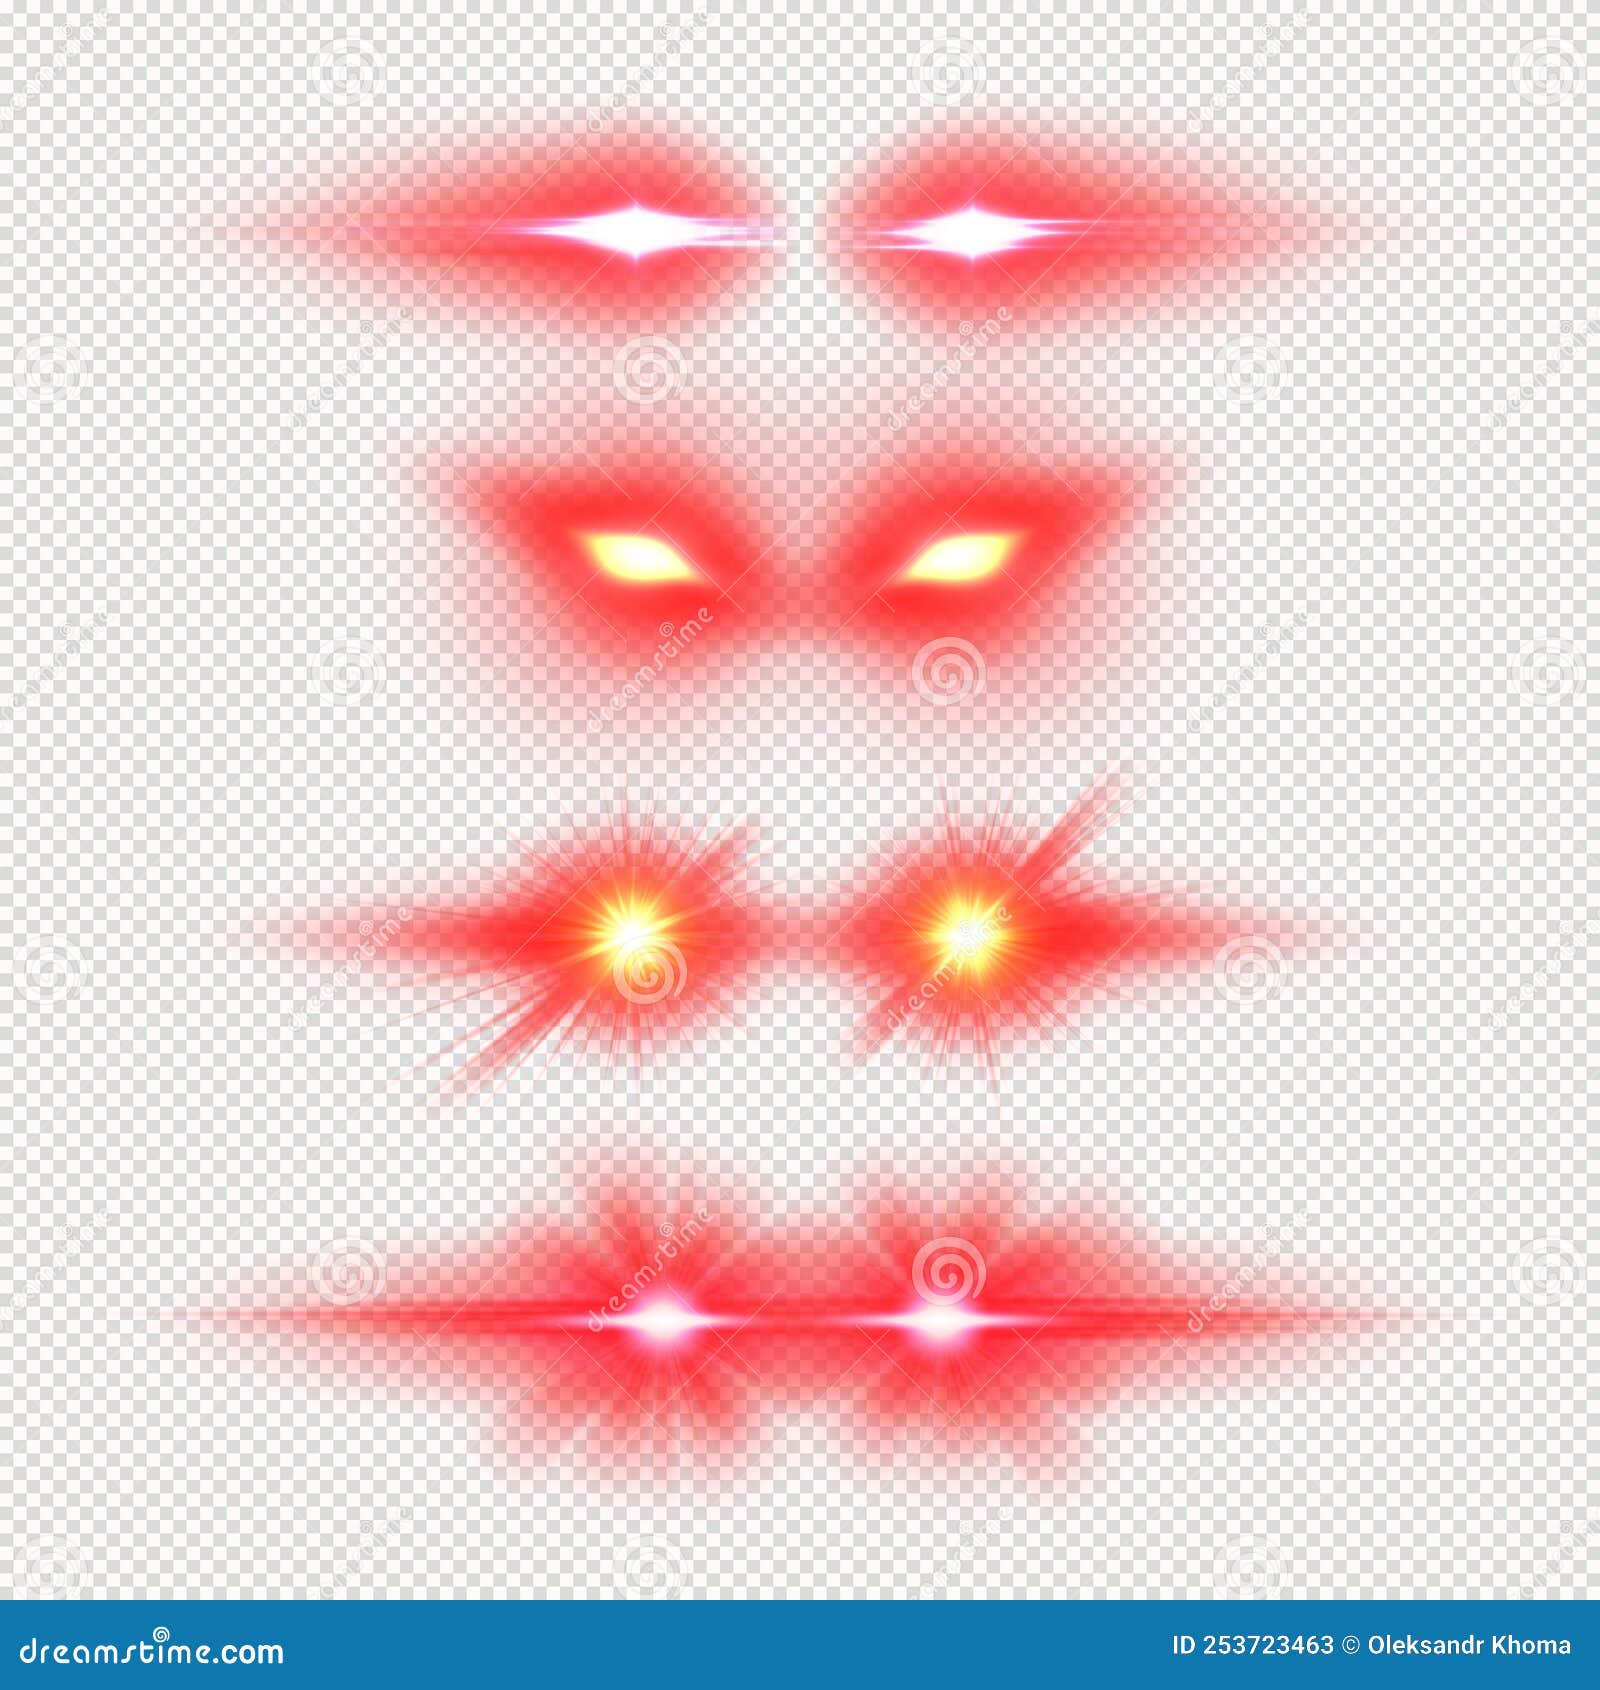 laser eyes meme light effect